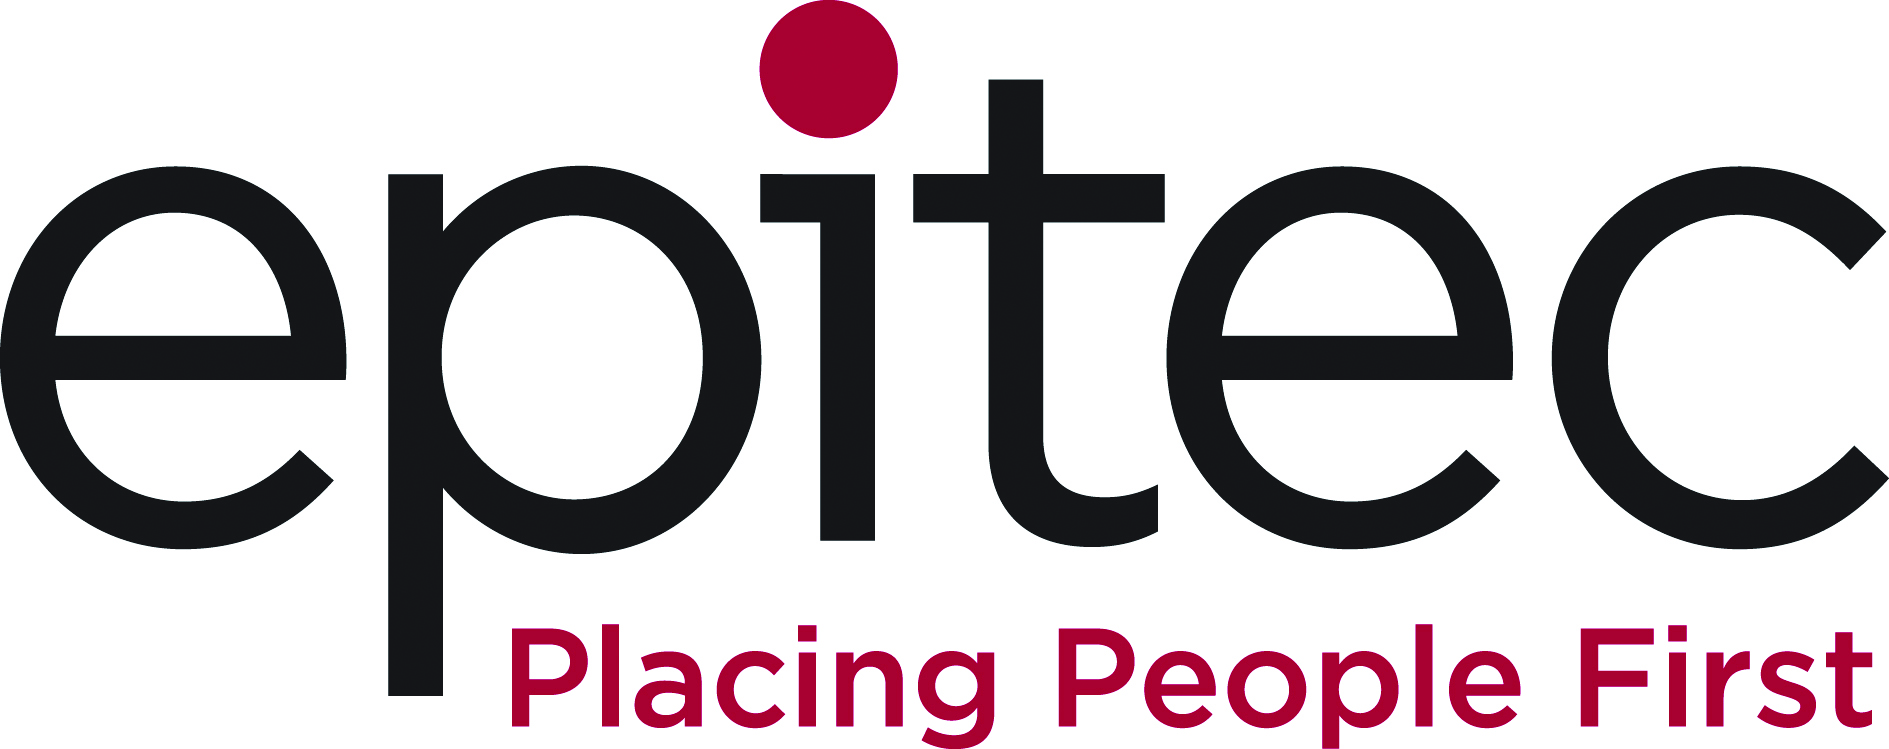 Epitec Logo